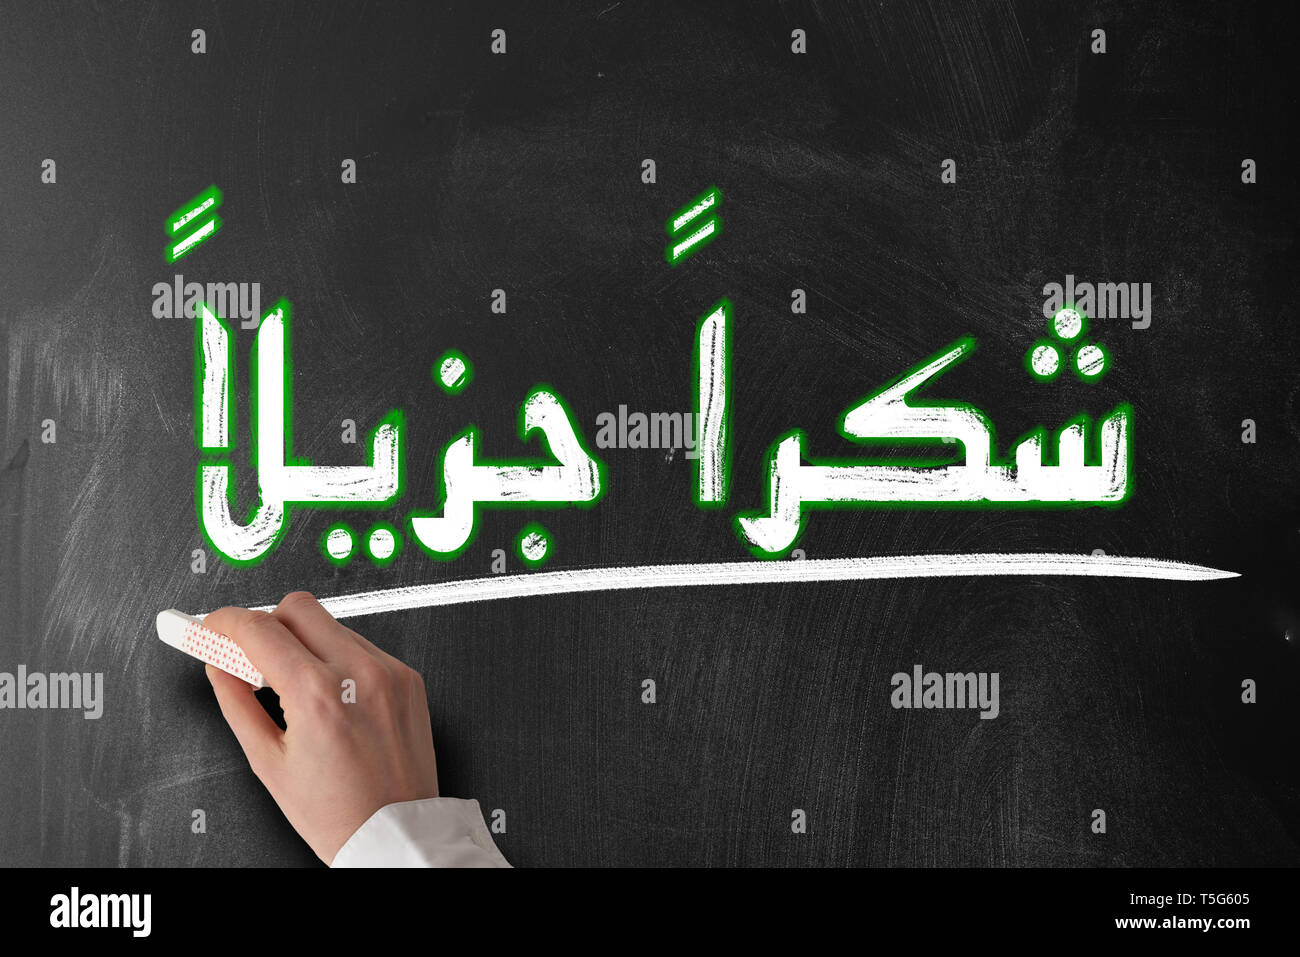 Arabische Wörter shukraan jazilaan in arabischen Schriftzeichen Bedeutung vielen Dank auf der Tafel Stockfoto